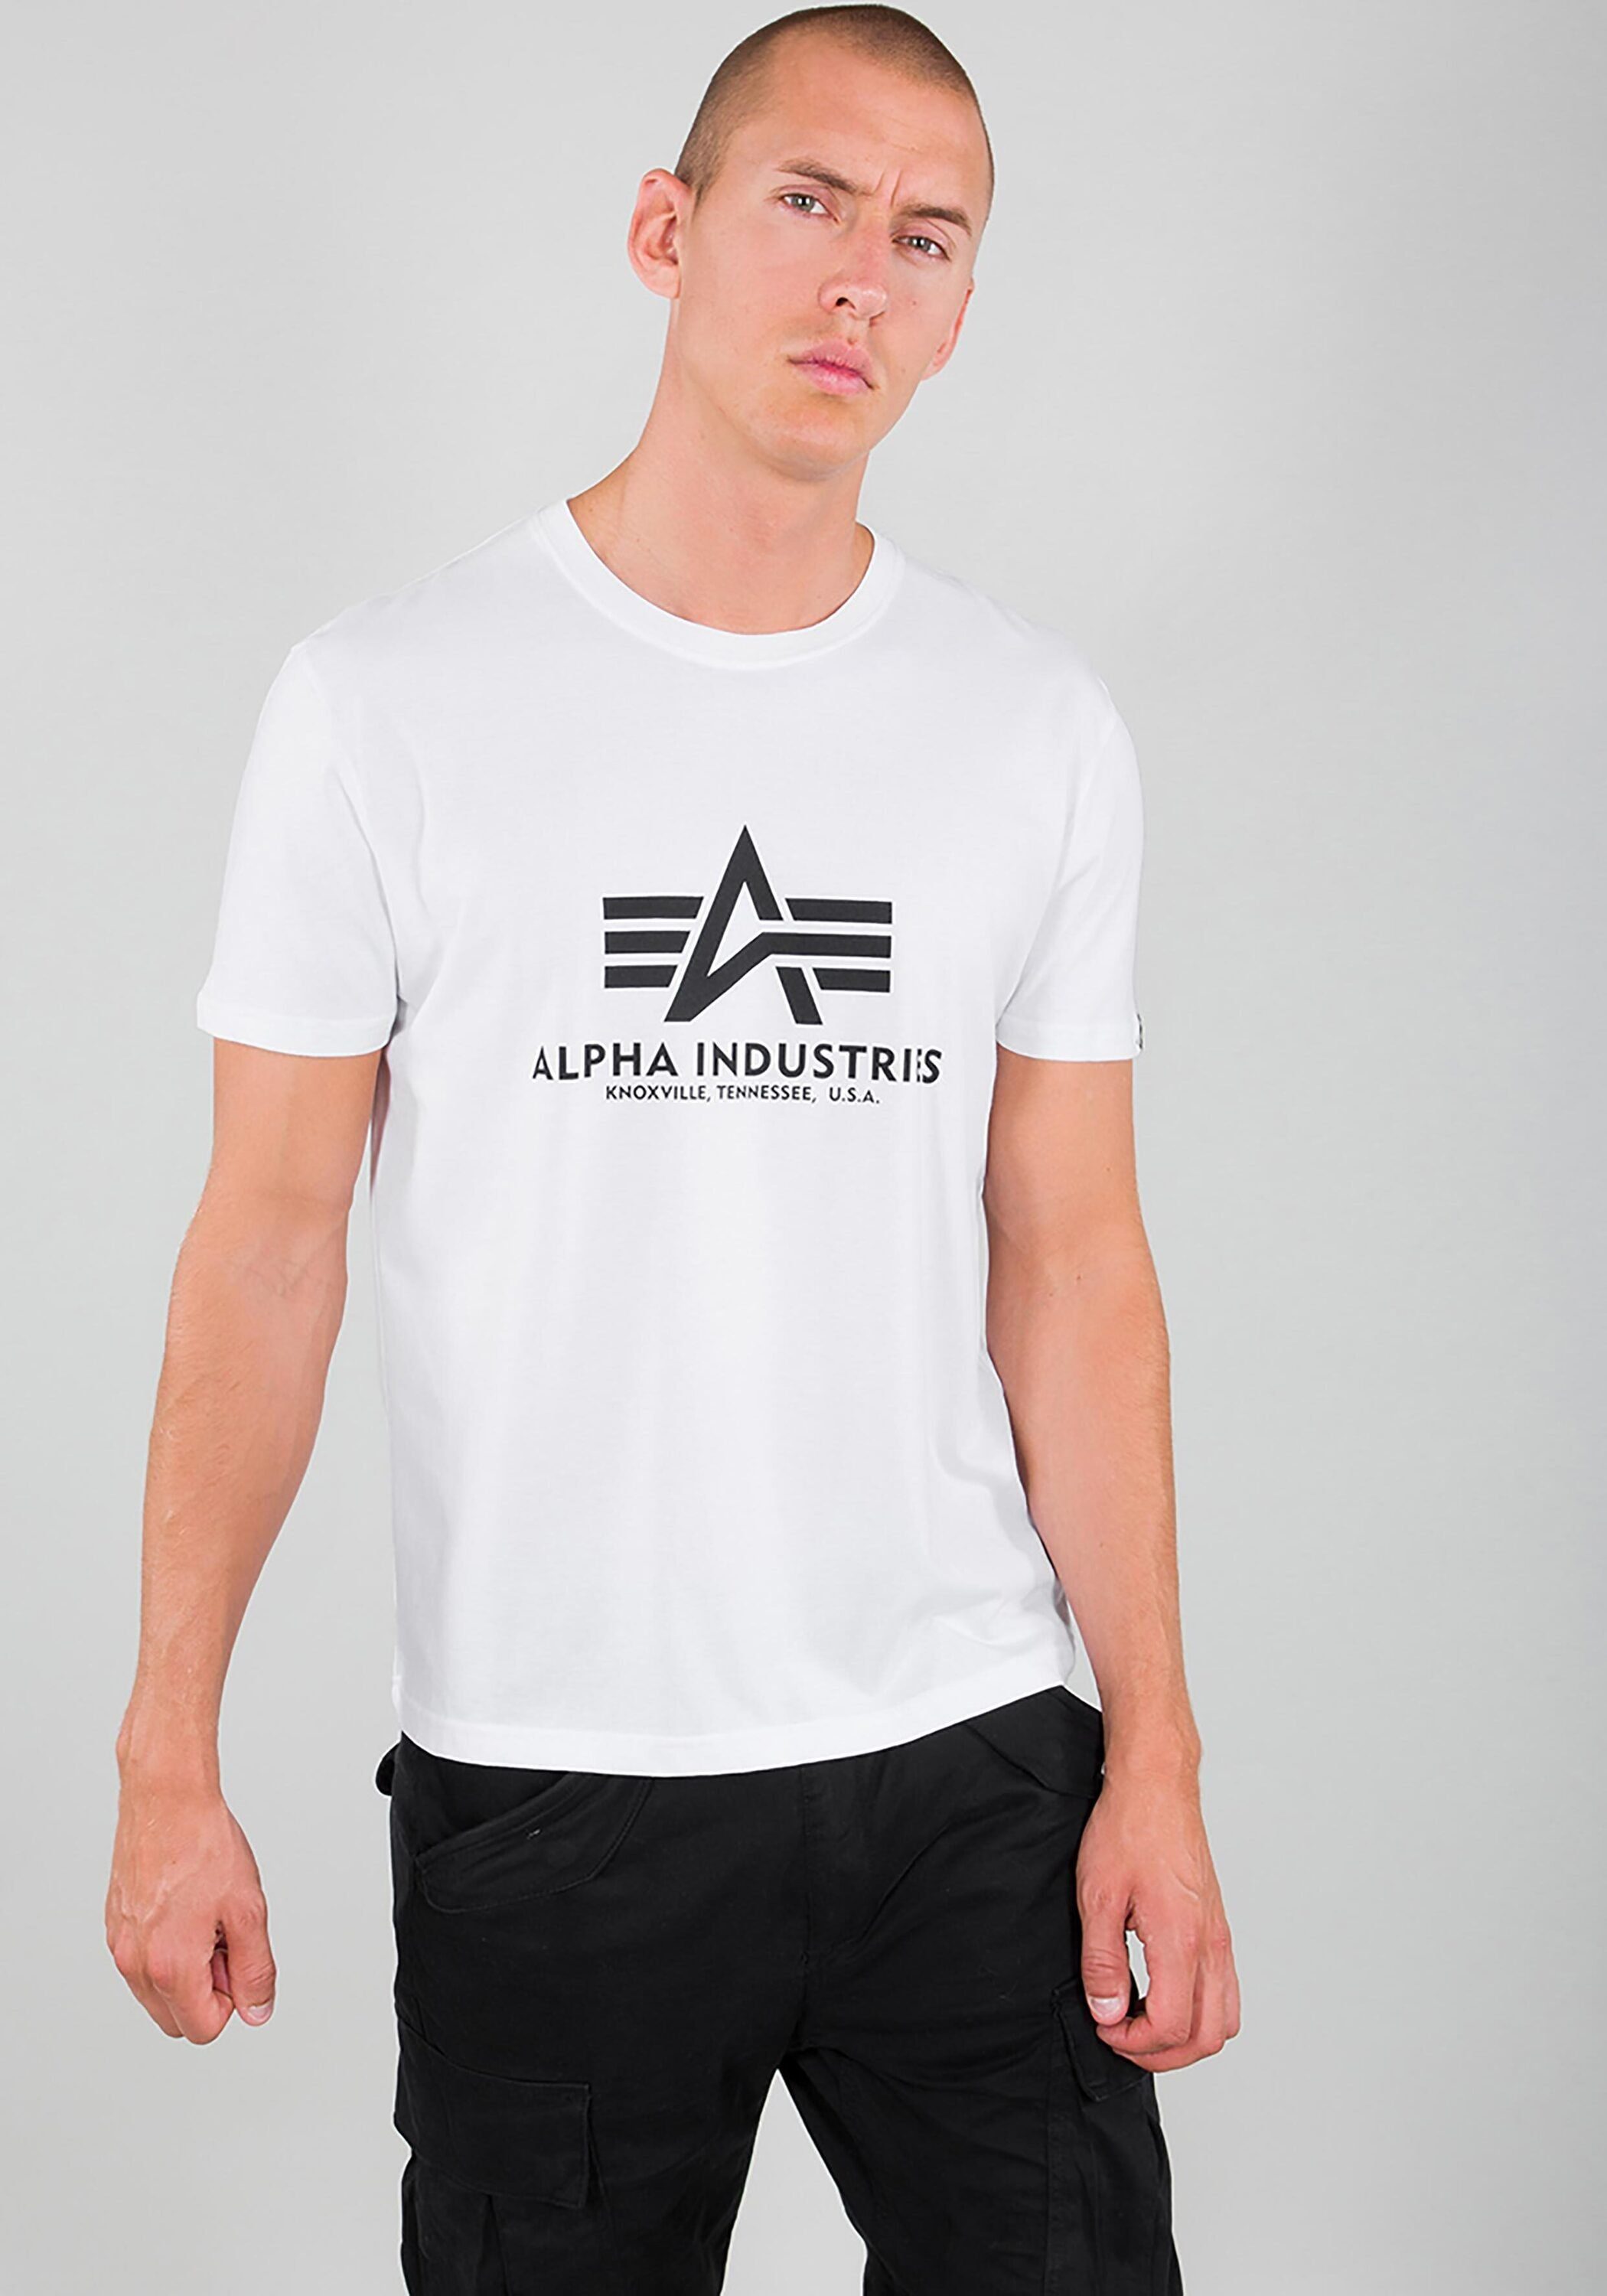 Industries - T-Shirt T-Shirts Industries T-Shirt white Basic Men Alpha Alpha